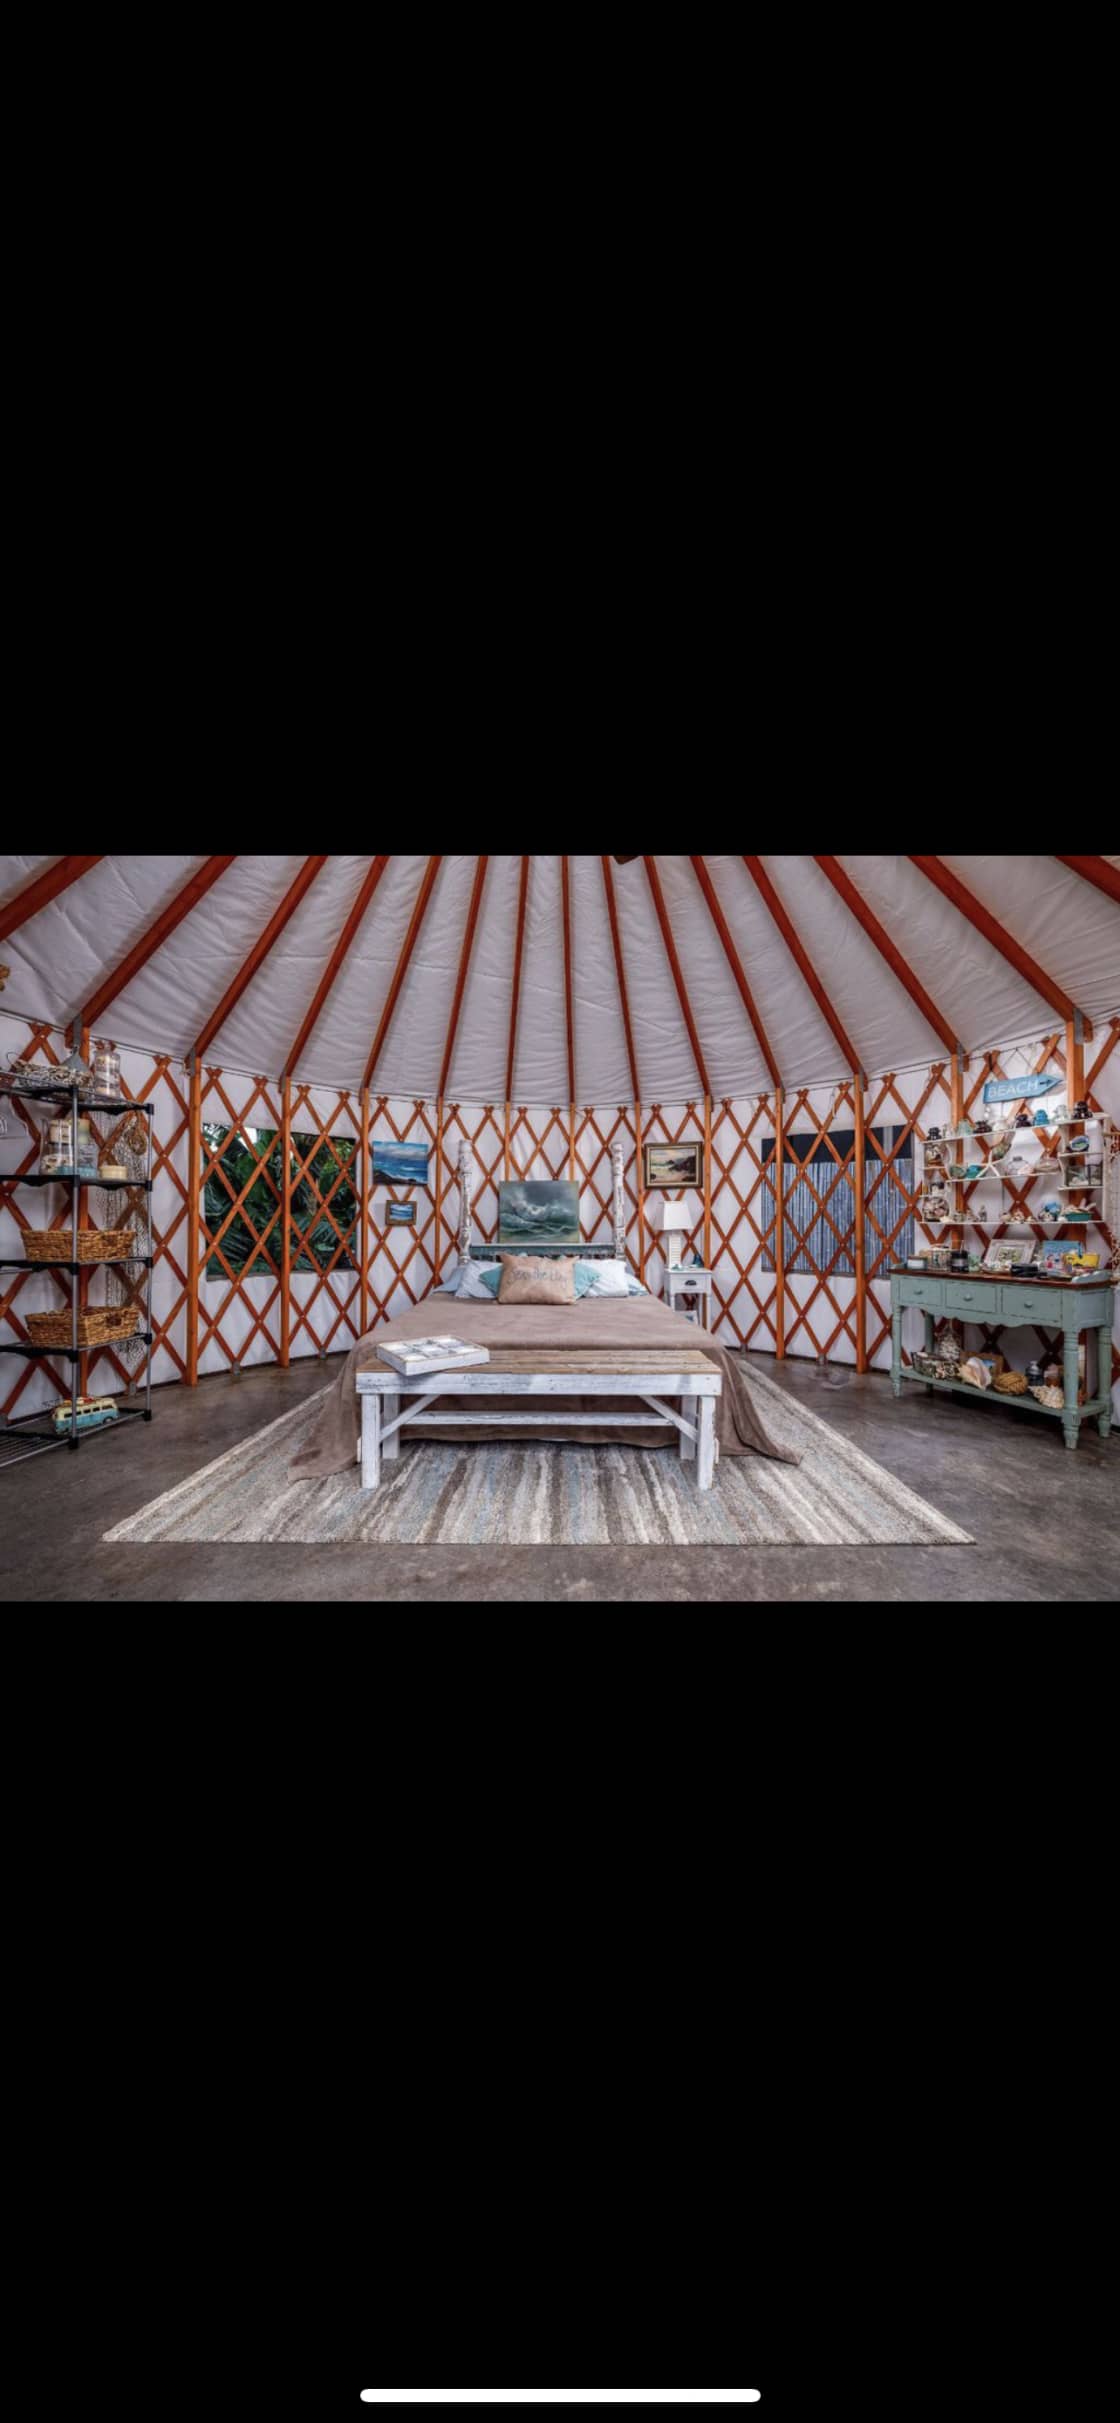 Paradise yurts